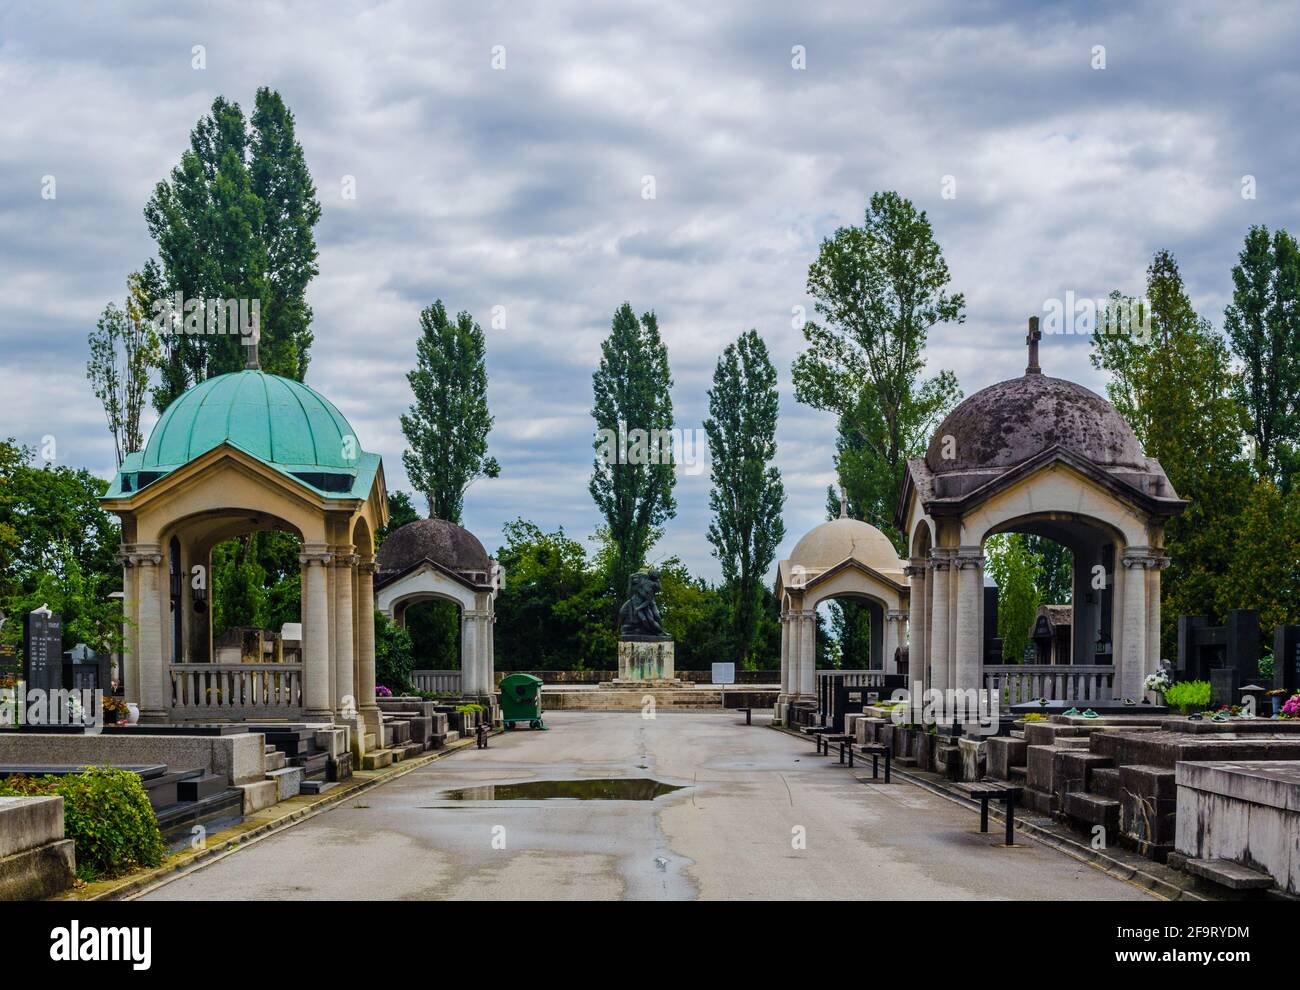 Der Friedhof Mirogoj ist ein Friedhofspark, der als eine der bemerkenswertesten Sehenswürdigkeiten in der Stadt Zagreb gilt. Stockfoto